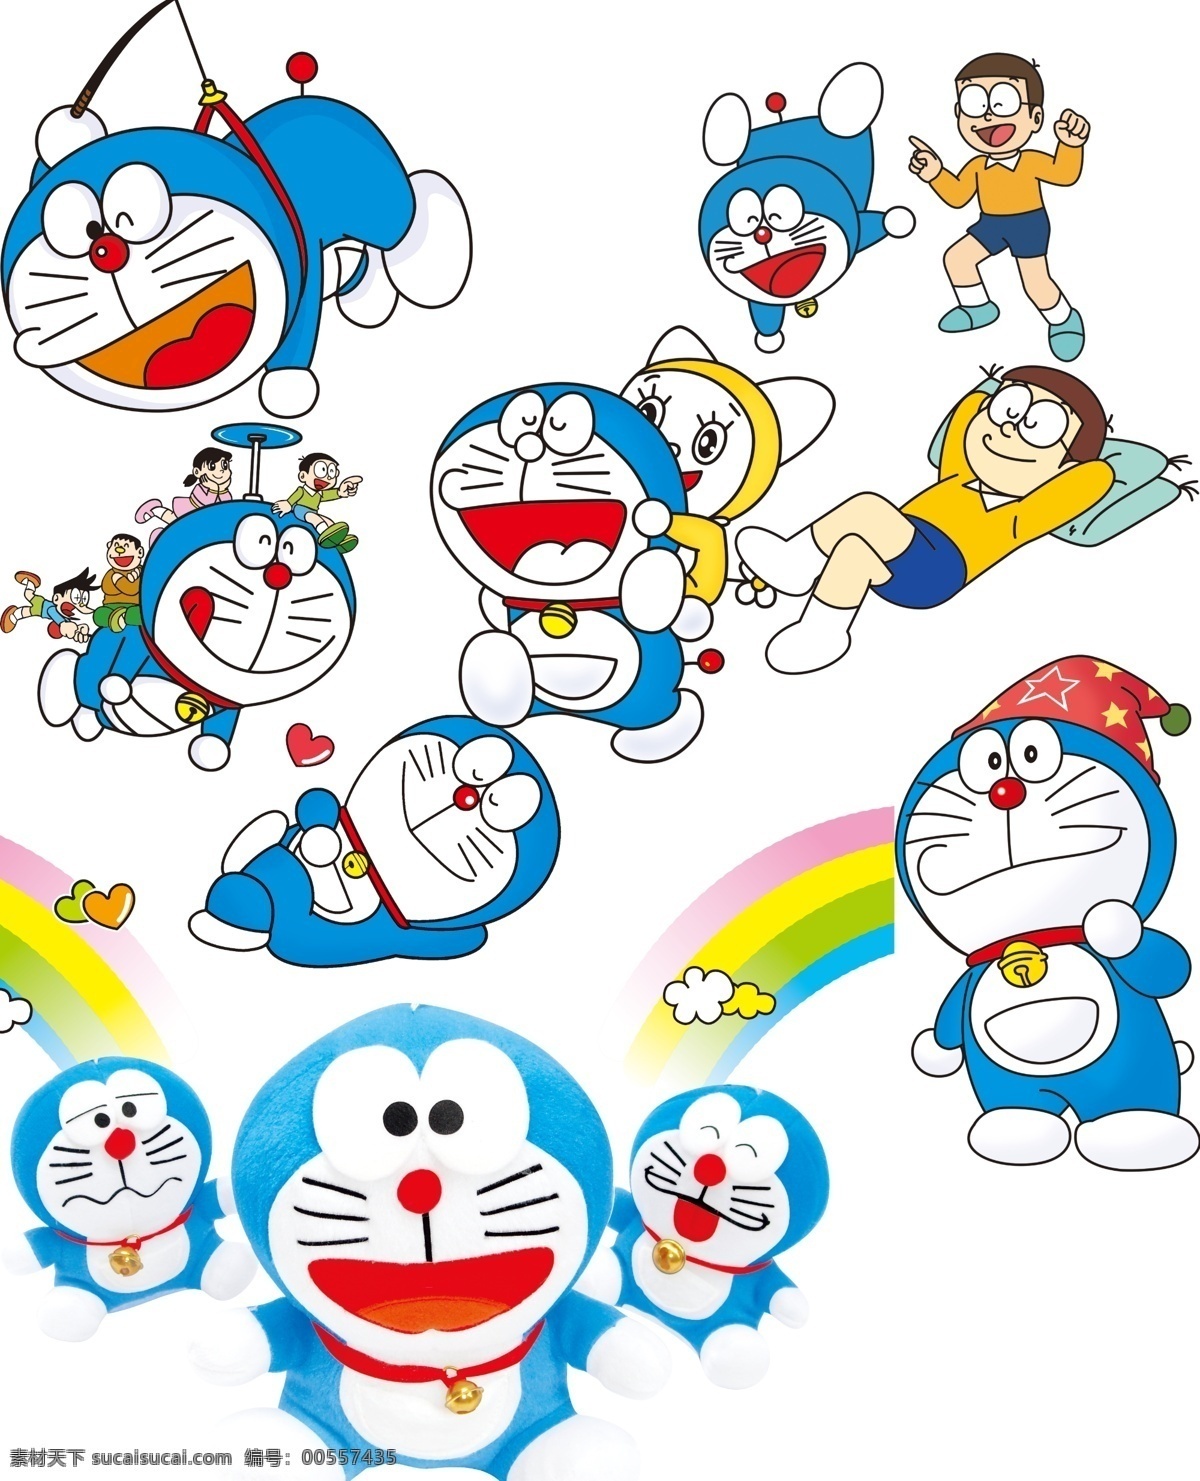 叮当猫全集 叮当猫 机器猫 日韩卡通 可爱 经典卡通 流行卡通 分层 源文件